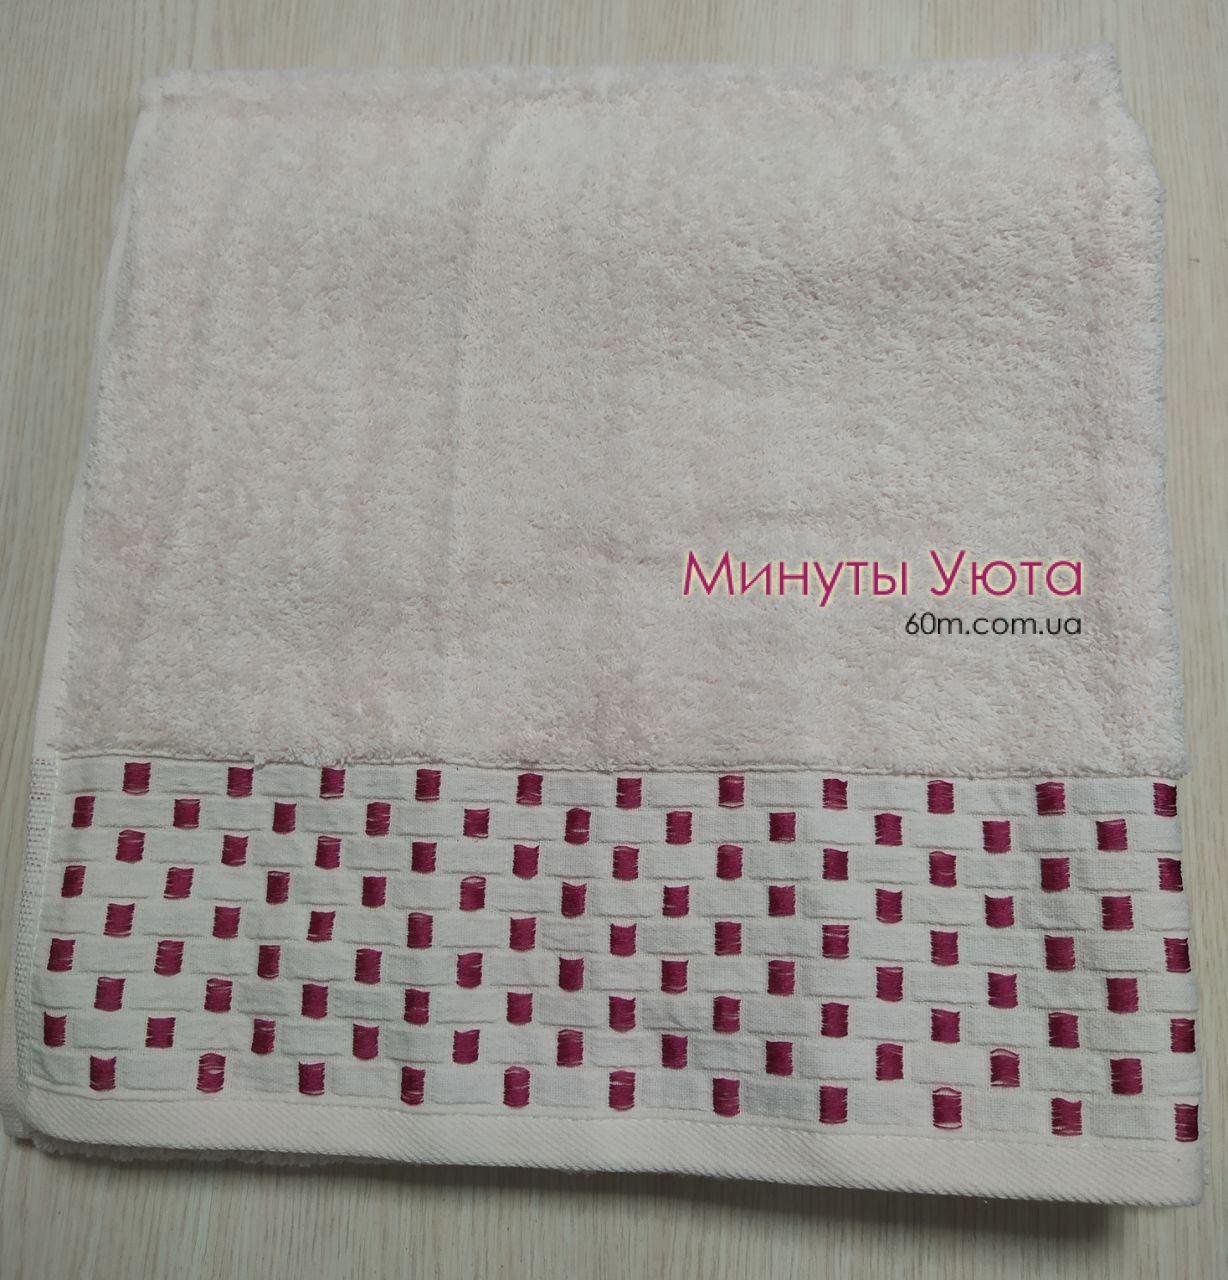 Хлопковое полотенце для сауны нежно-розового цвета Cestepe